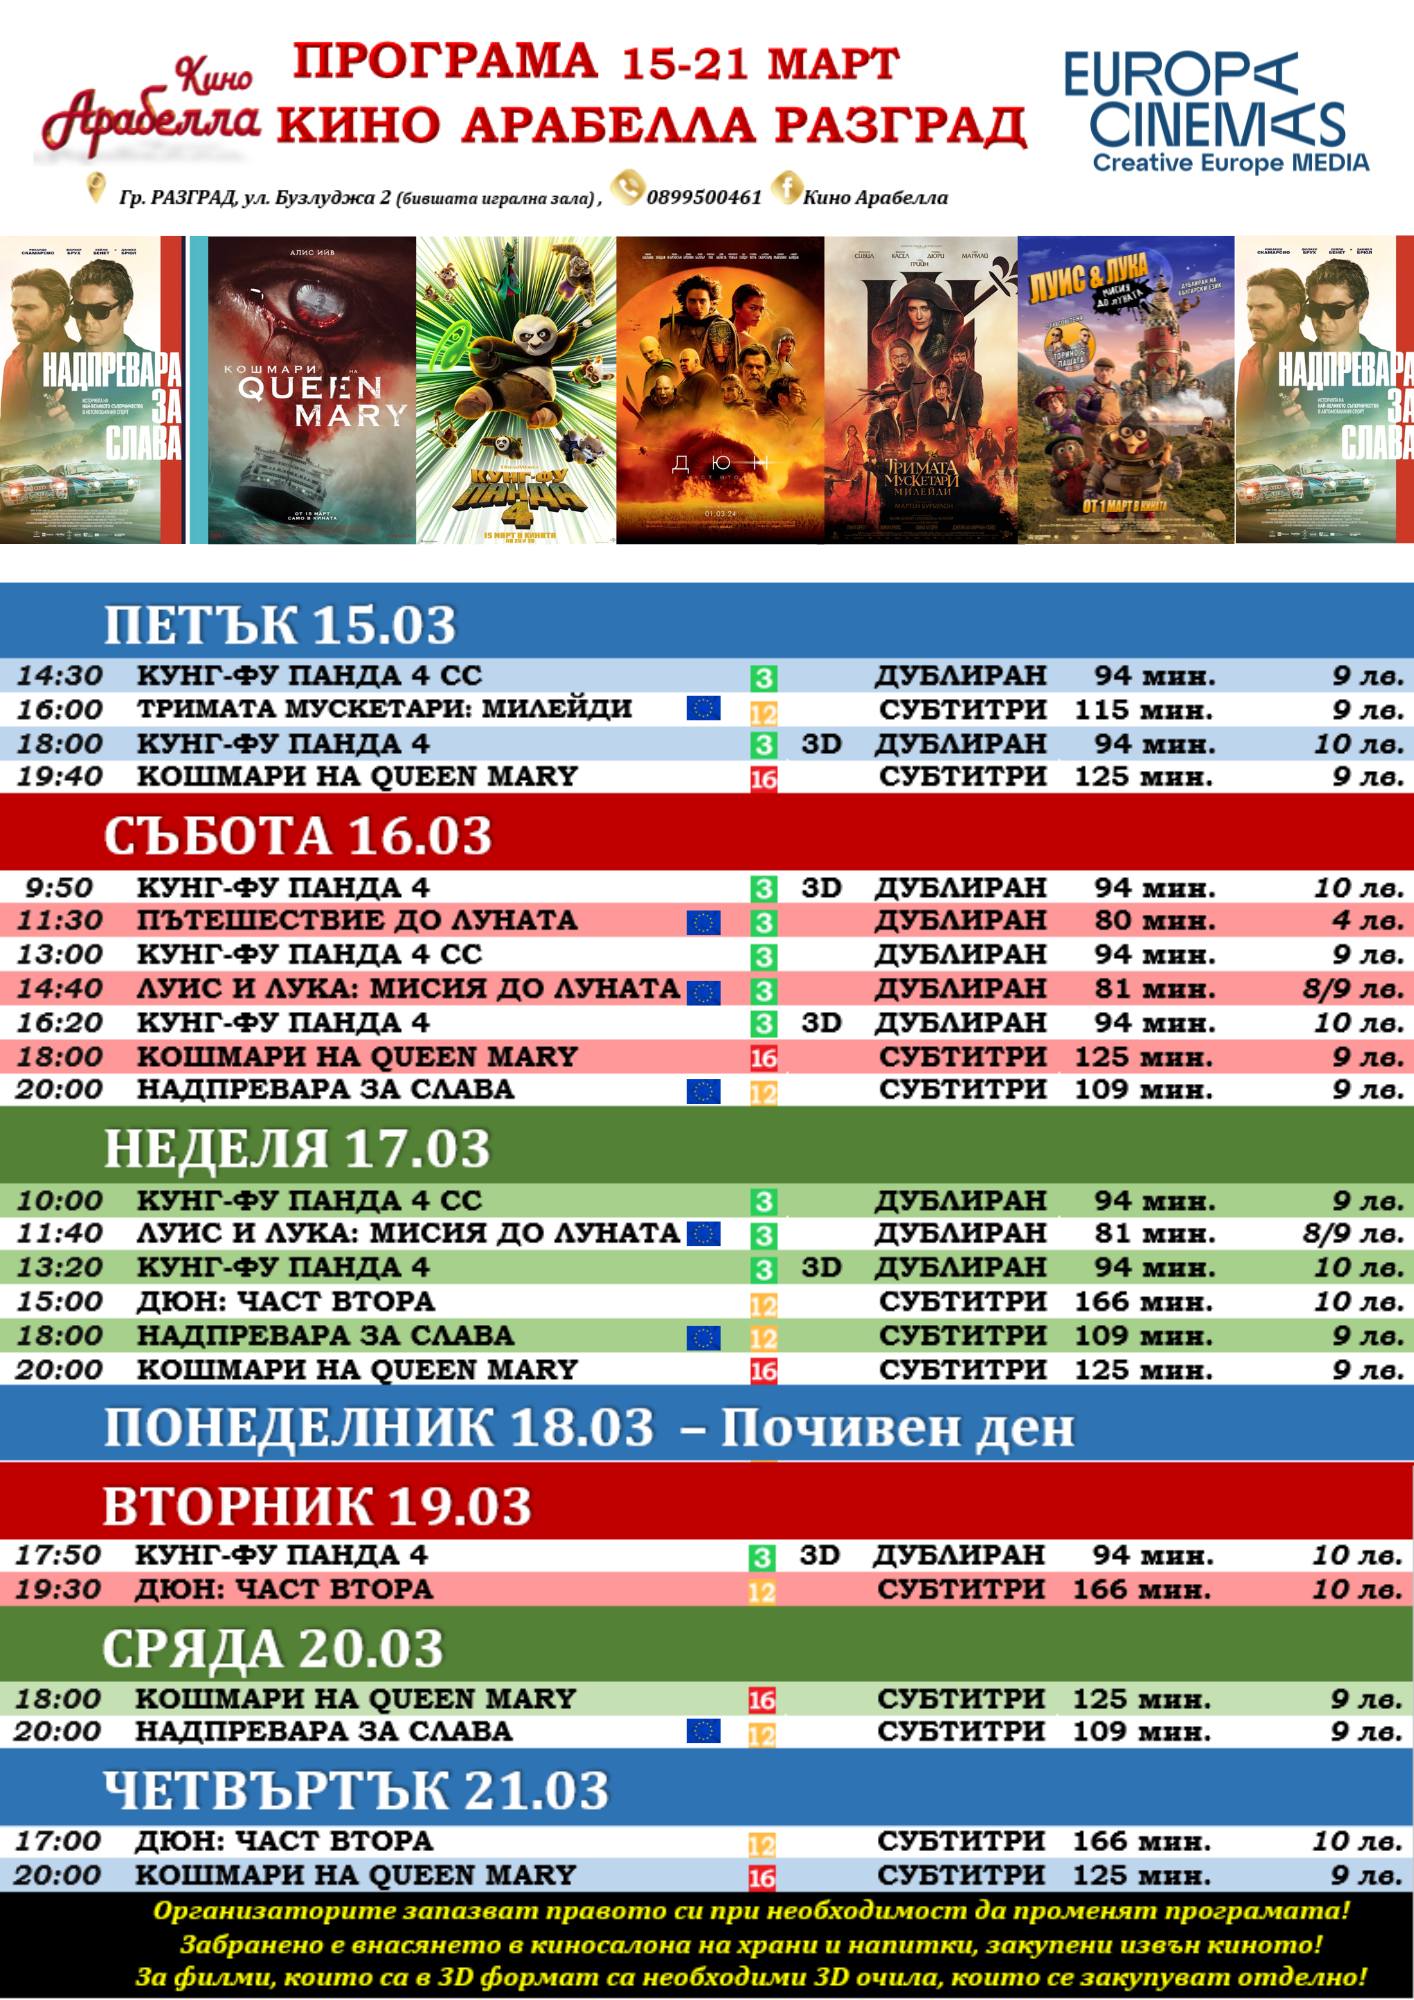 Latona Cinema :      15-21  2024